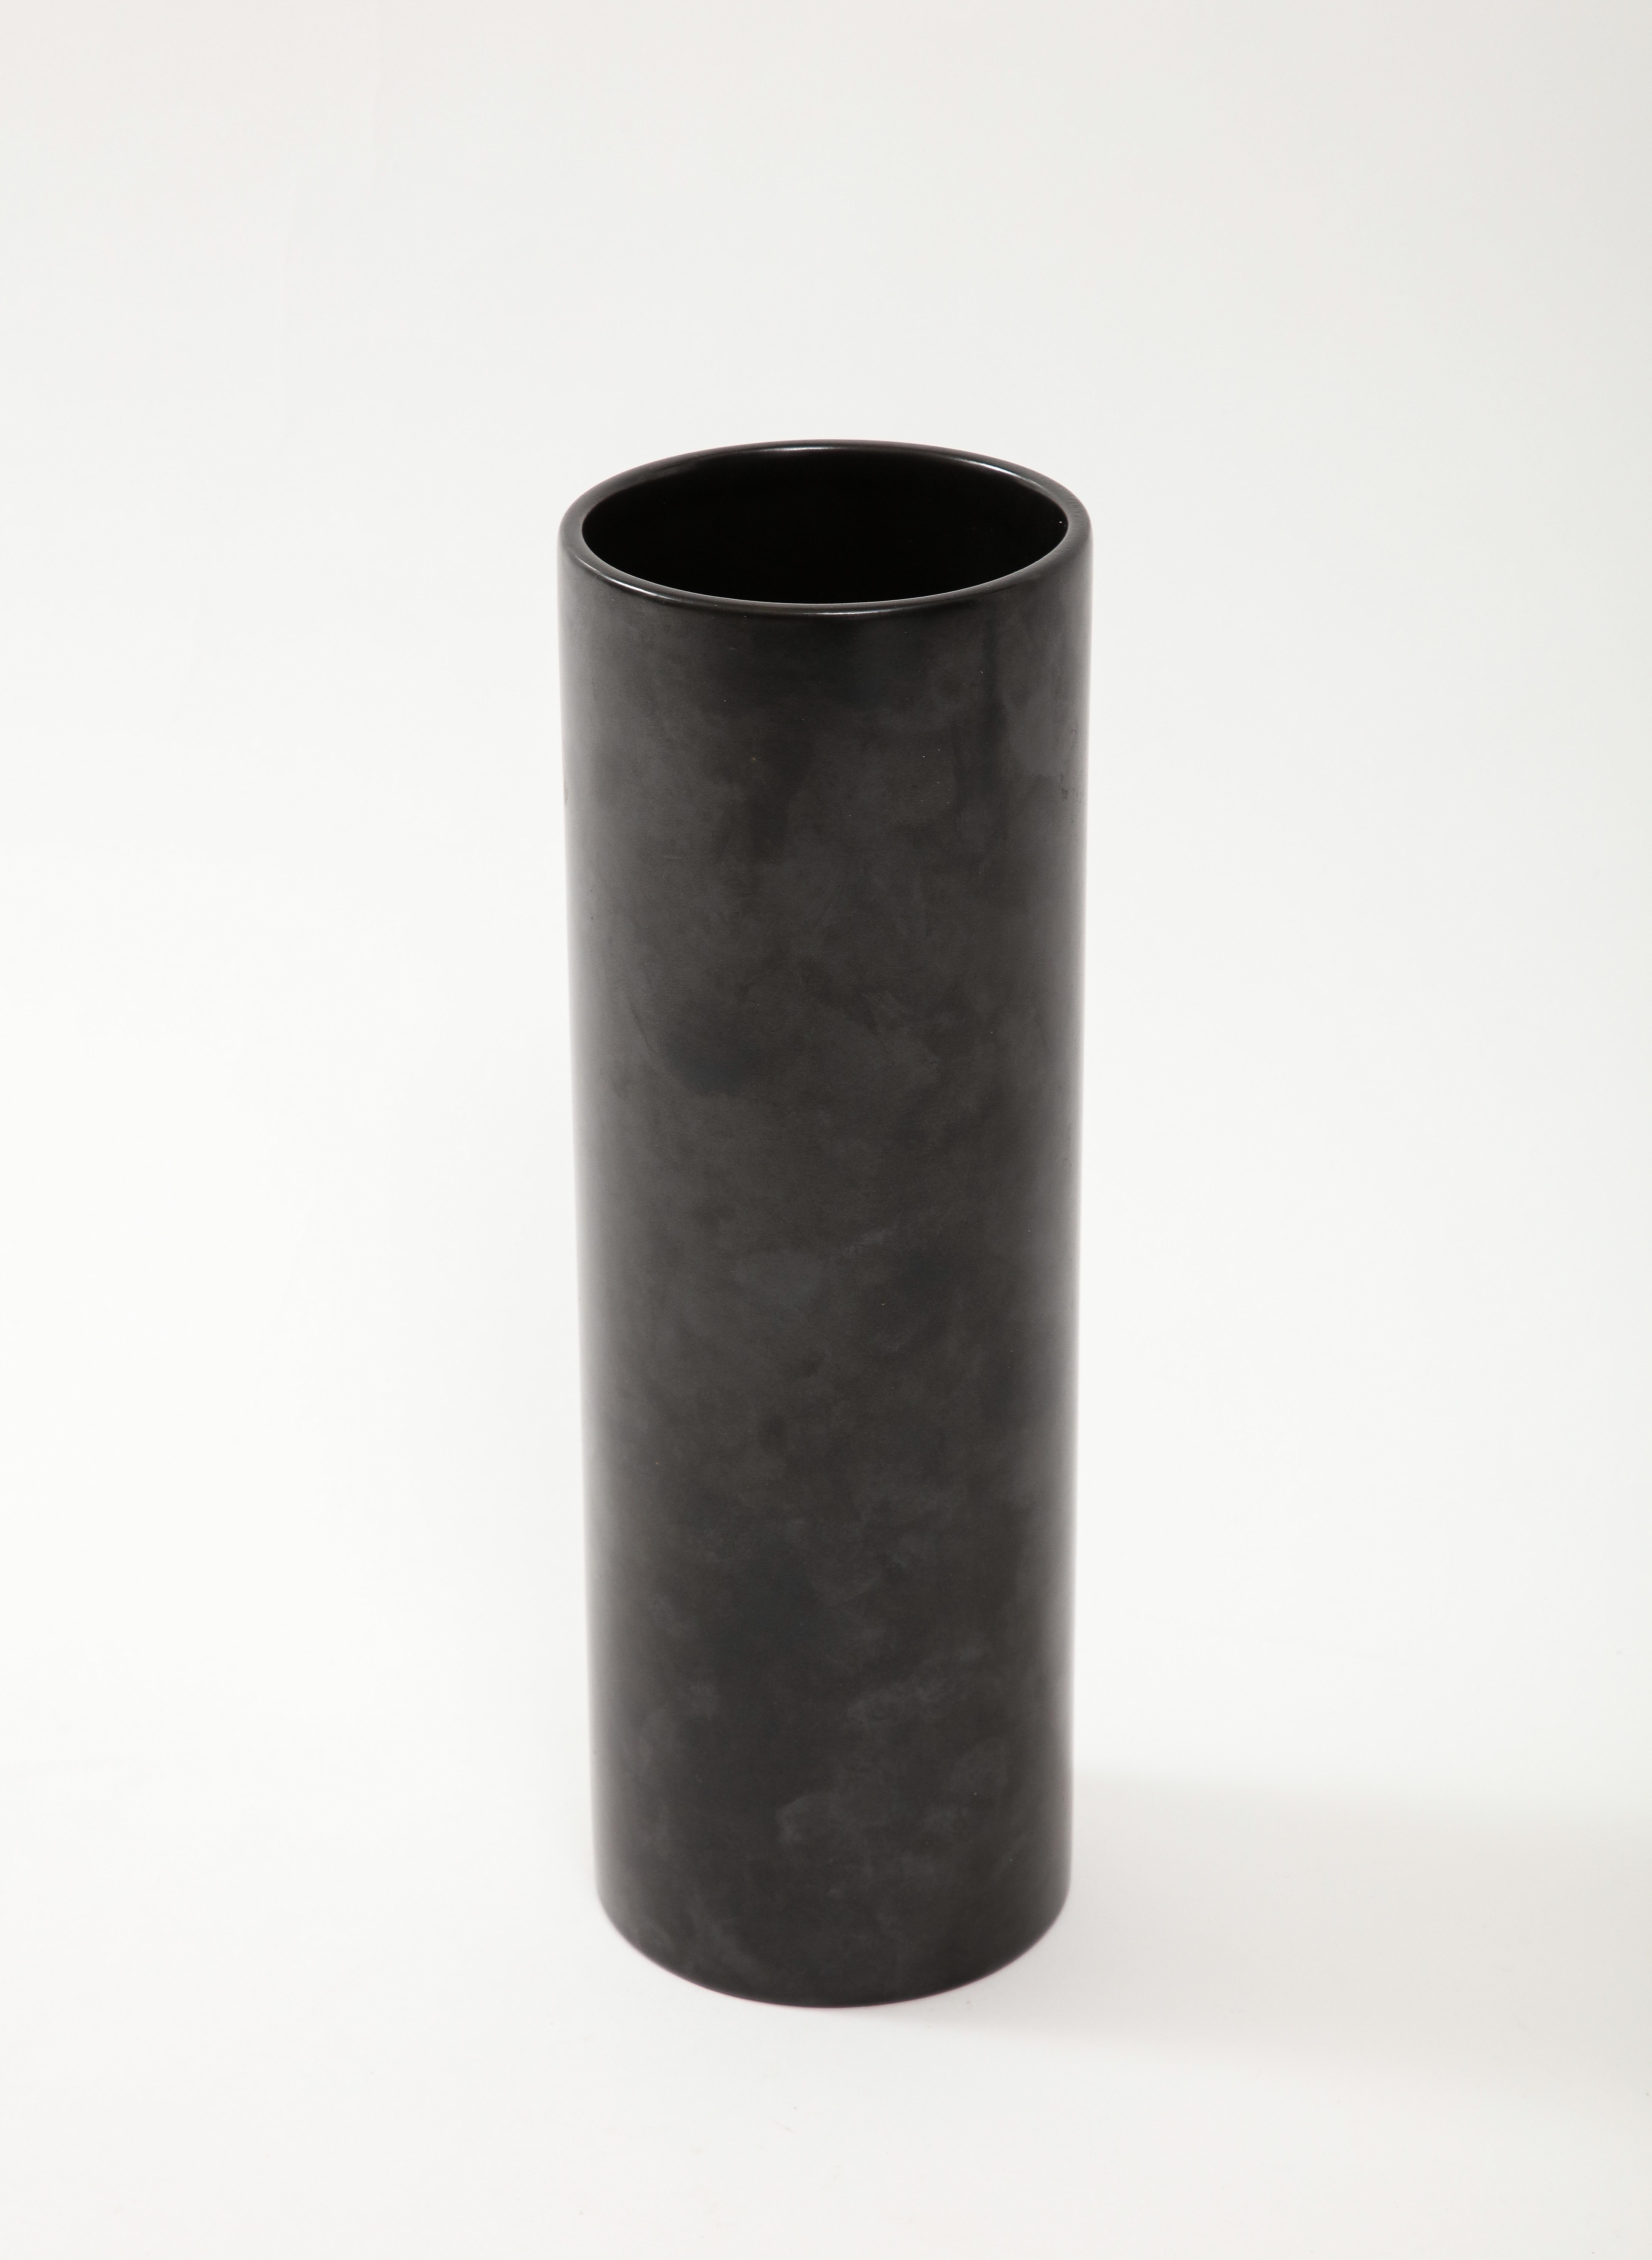 Large Georges Jouve Style Black Matte Cylinder Vase, France, c. 1950's 1